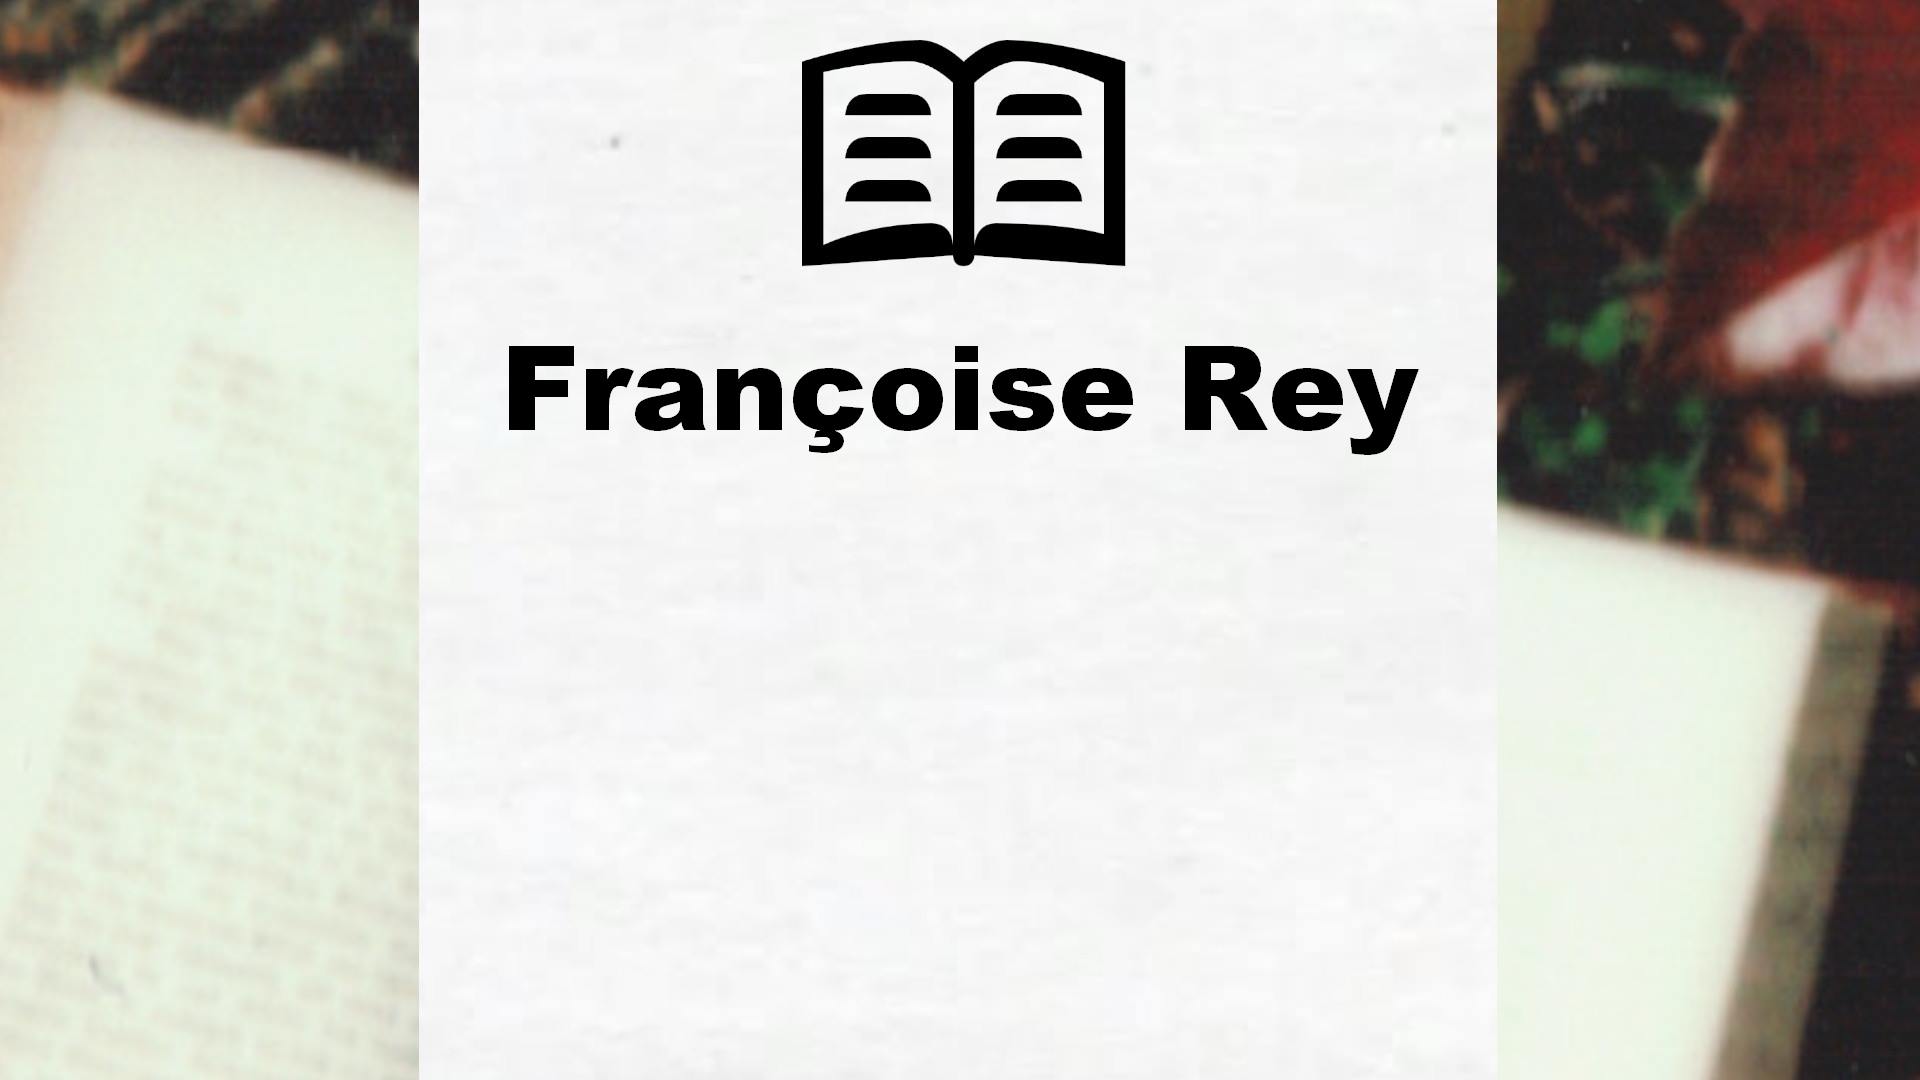 Livres de Françoise Rey